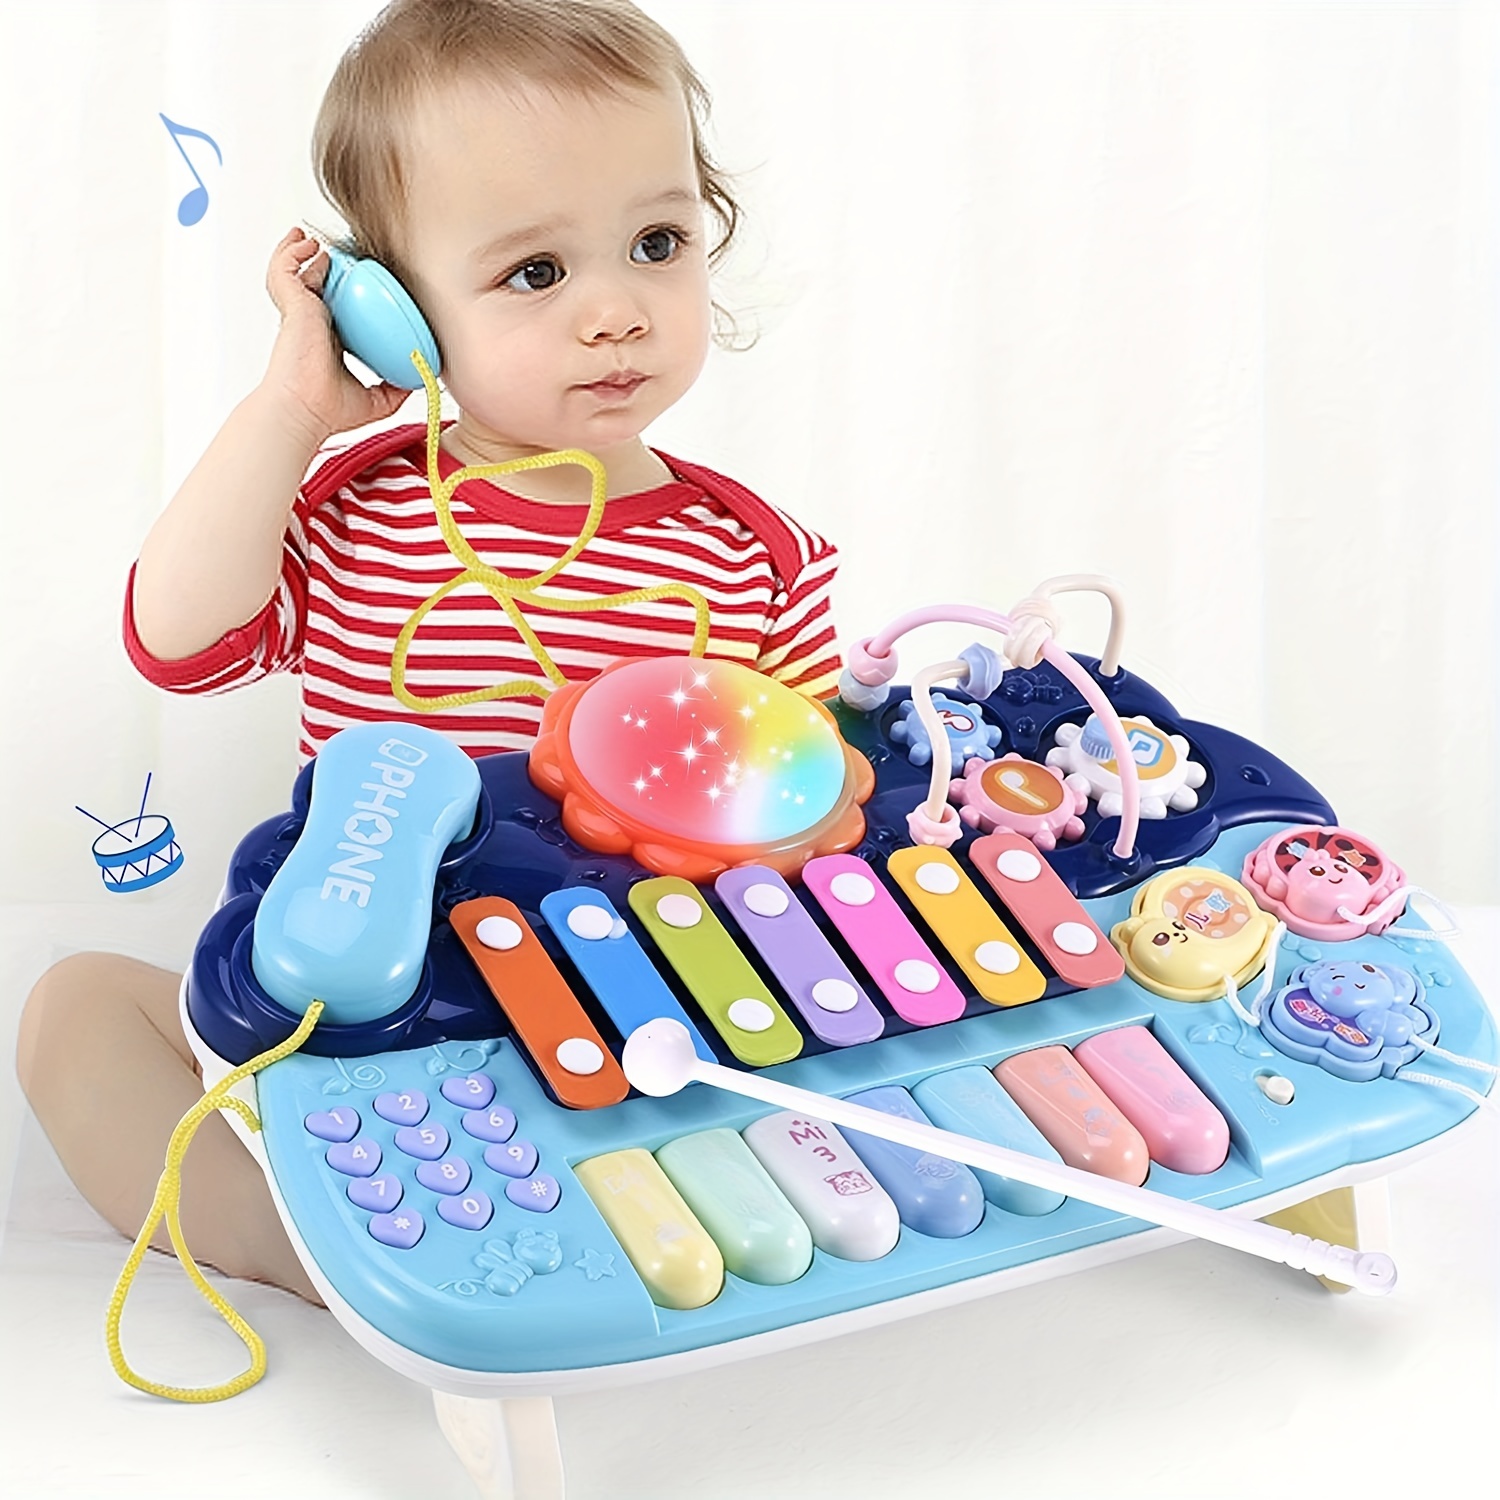 2 In 1 Baby Piano Xylophon Spielzeug Für Kleinkinder 1-3 Jahre Alt, 8  Mehrfarbige Tastatur Xylophon Klavier, Vorschule  Bildungs-musik-lerninstrumente Spielzeug Für Baby Kinder Mädchen Jungen, Mehr Kaufen, Mehr Sparen